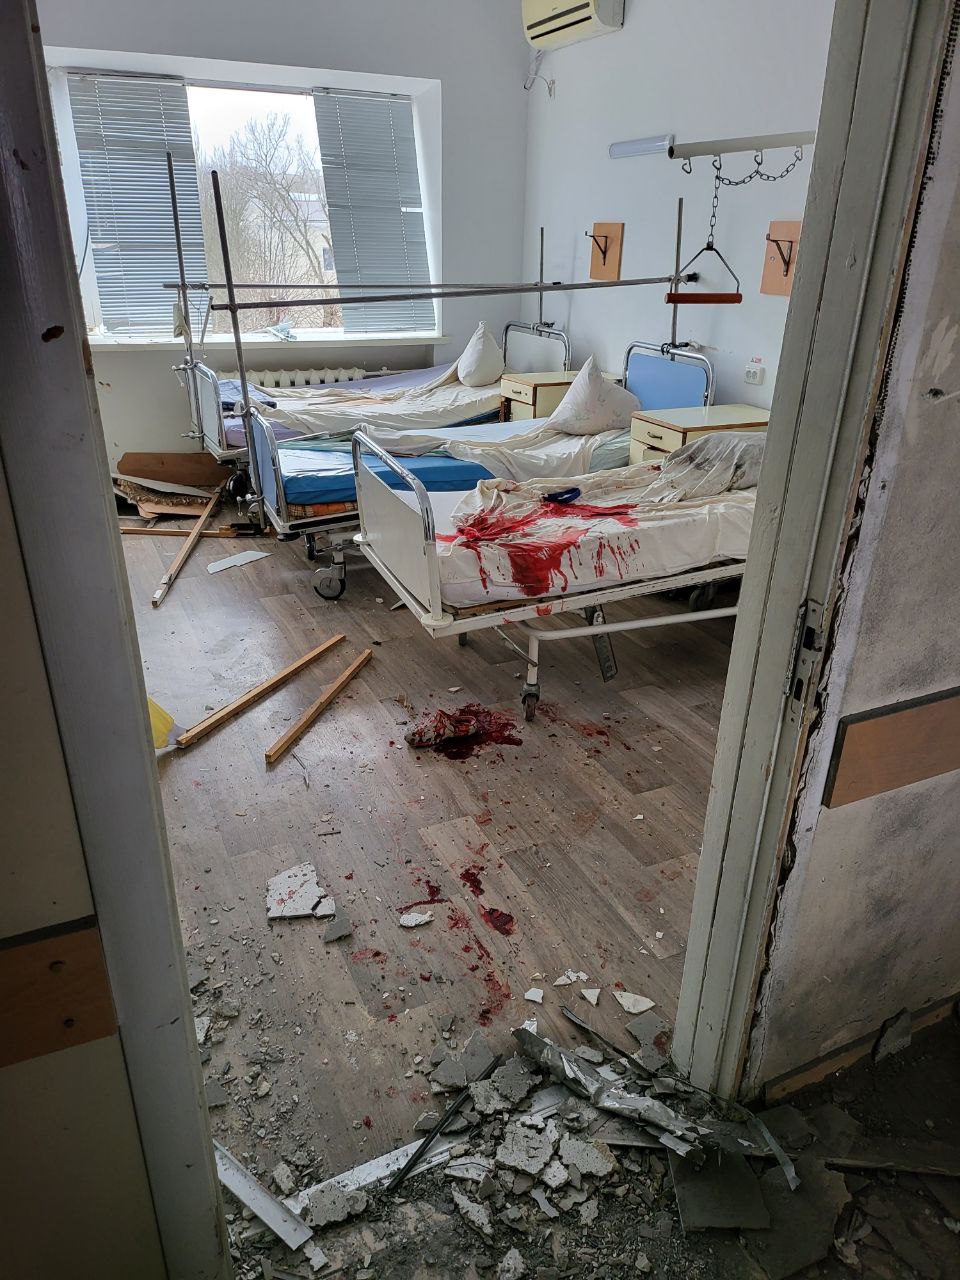 Kherson under massive Russian artillery attack, hospital damaged